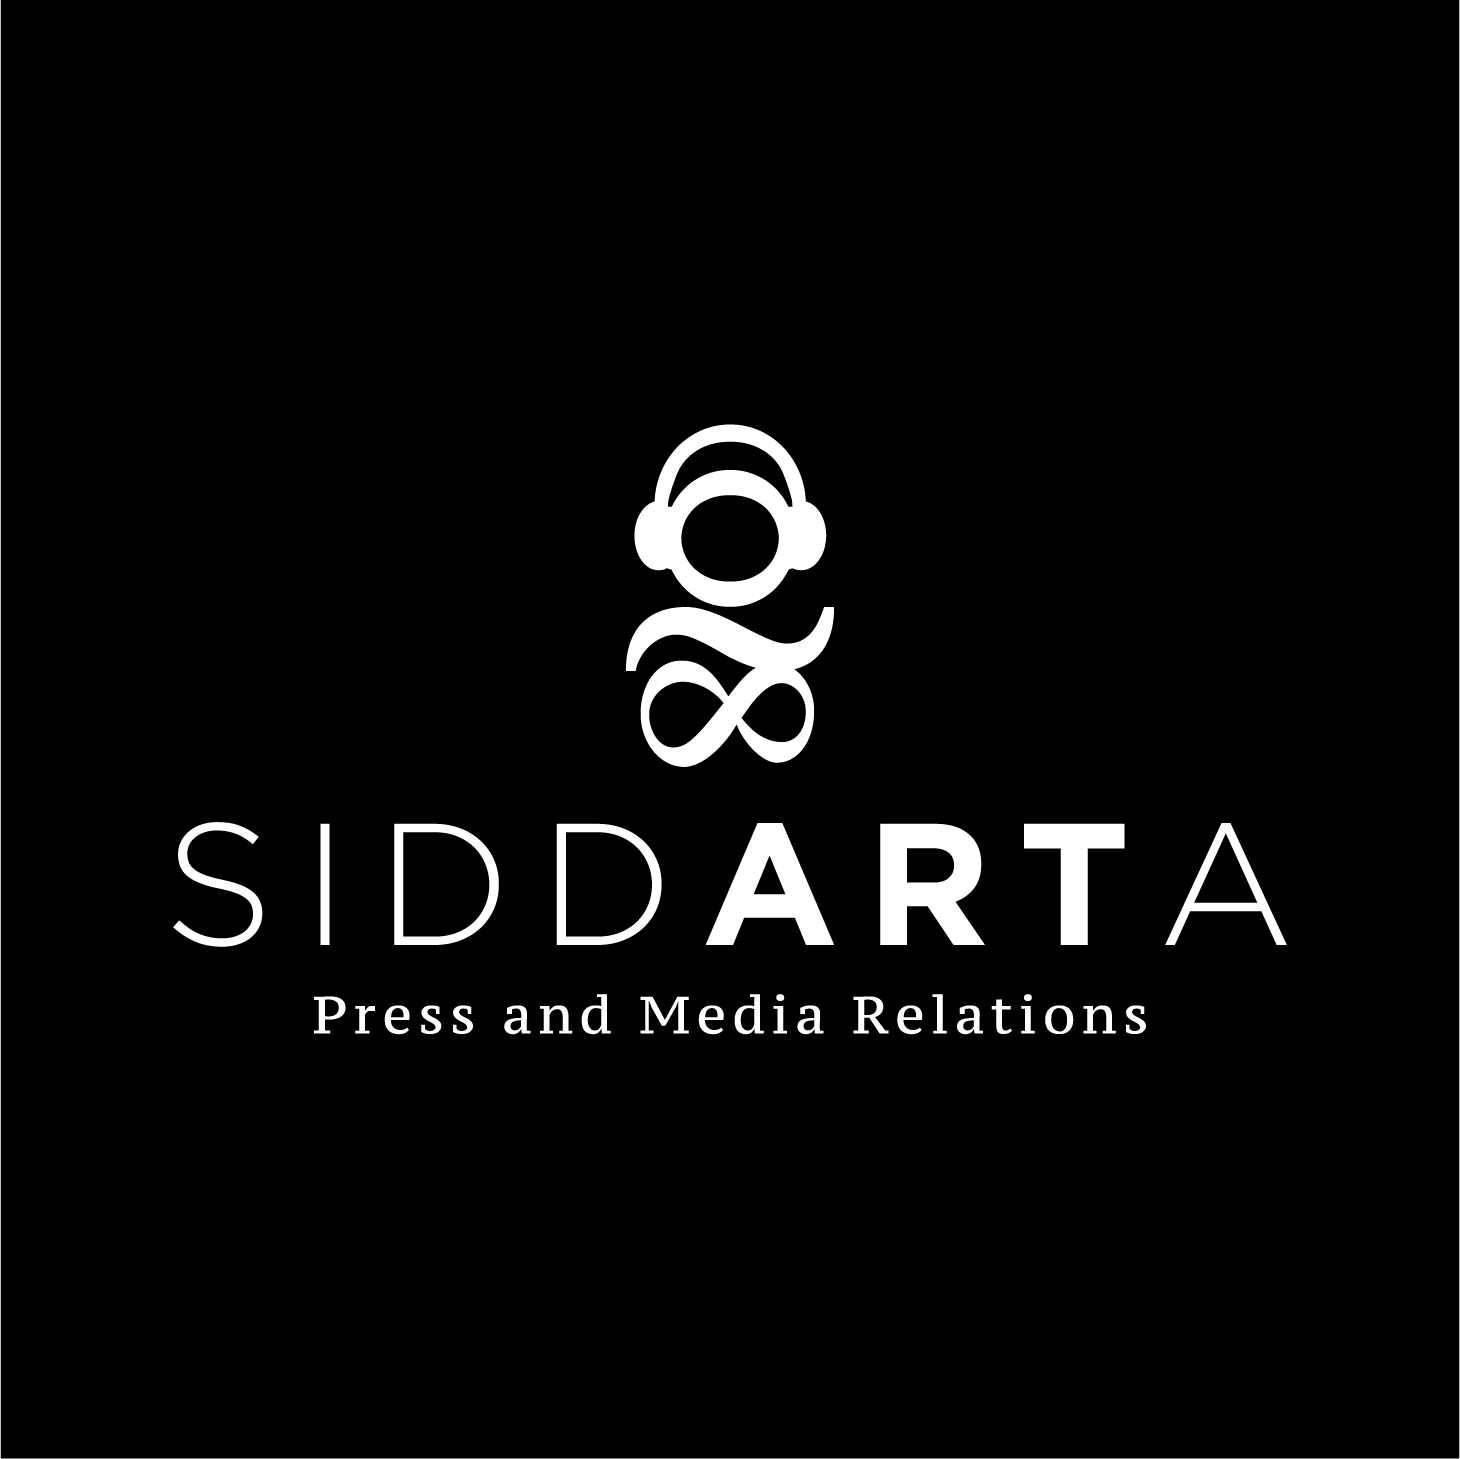 Siddarta Press